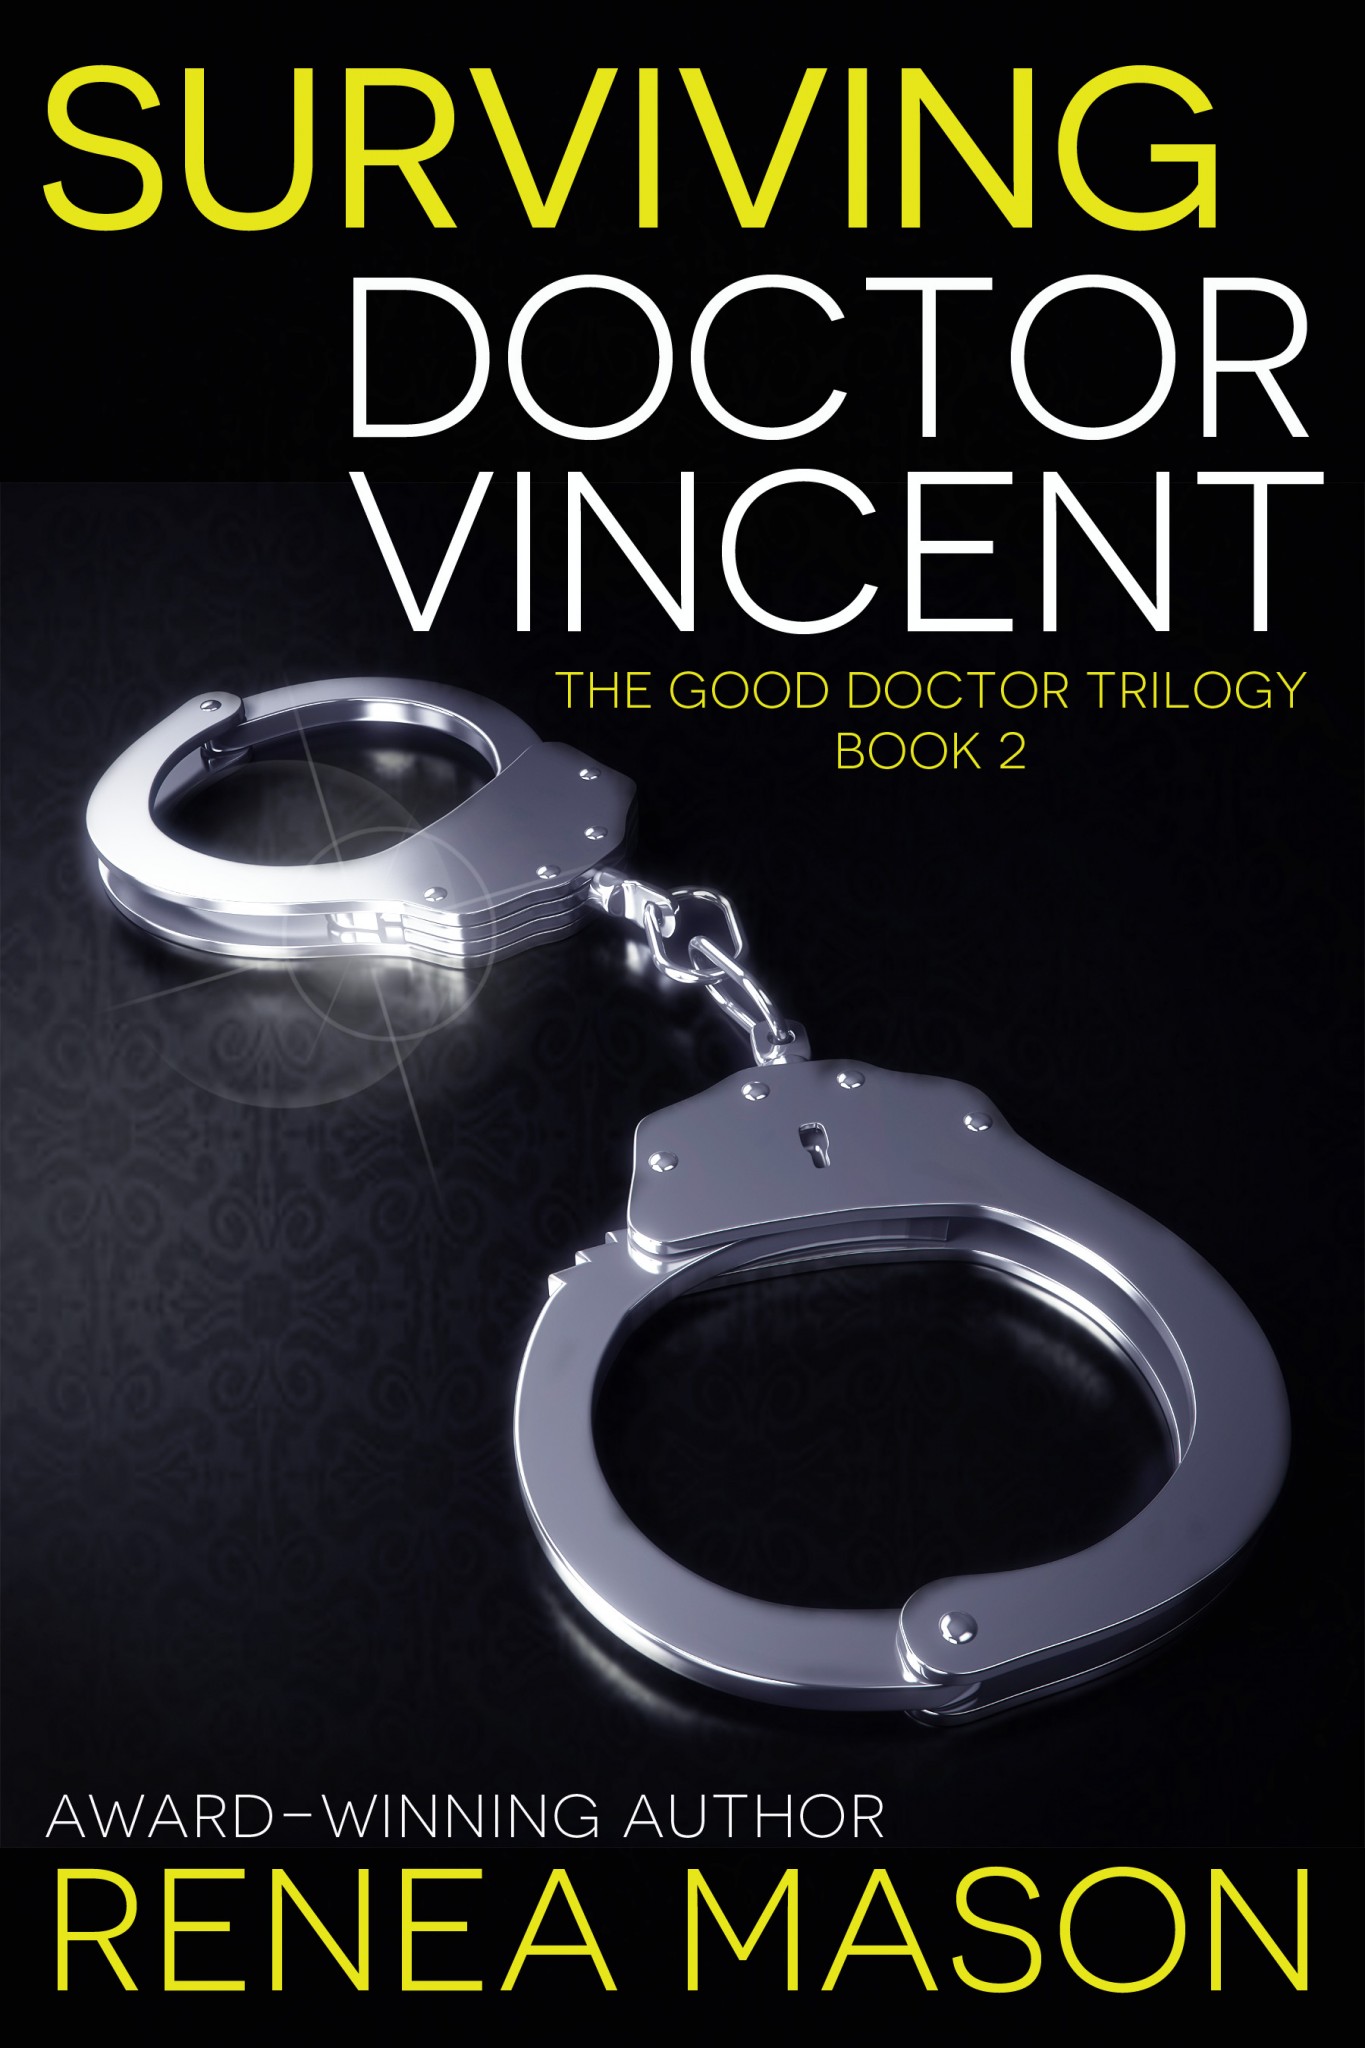 Surviving Doctor Vincent by Renea Mason